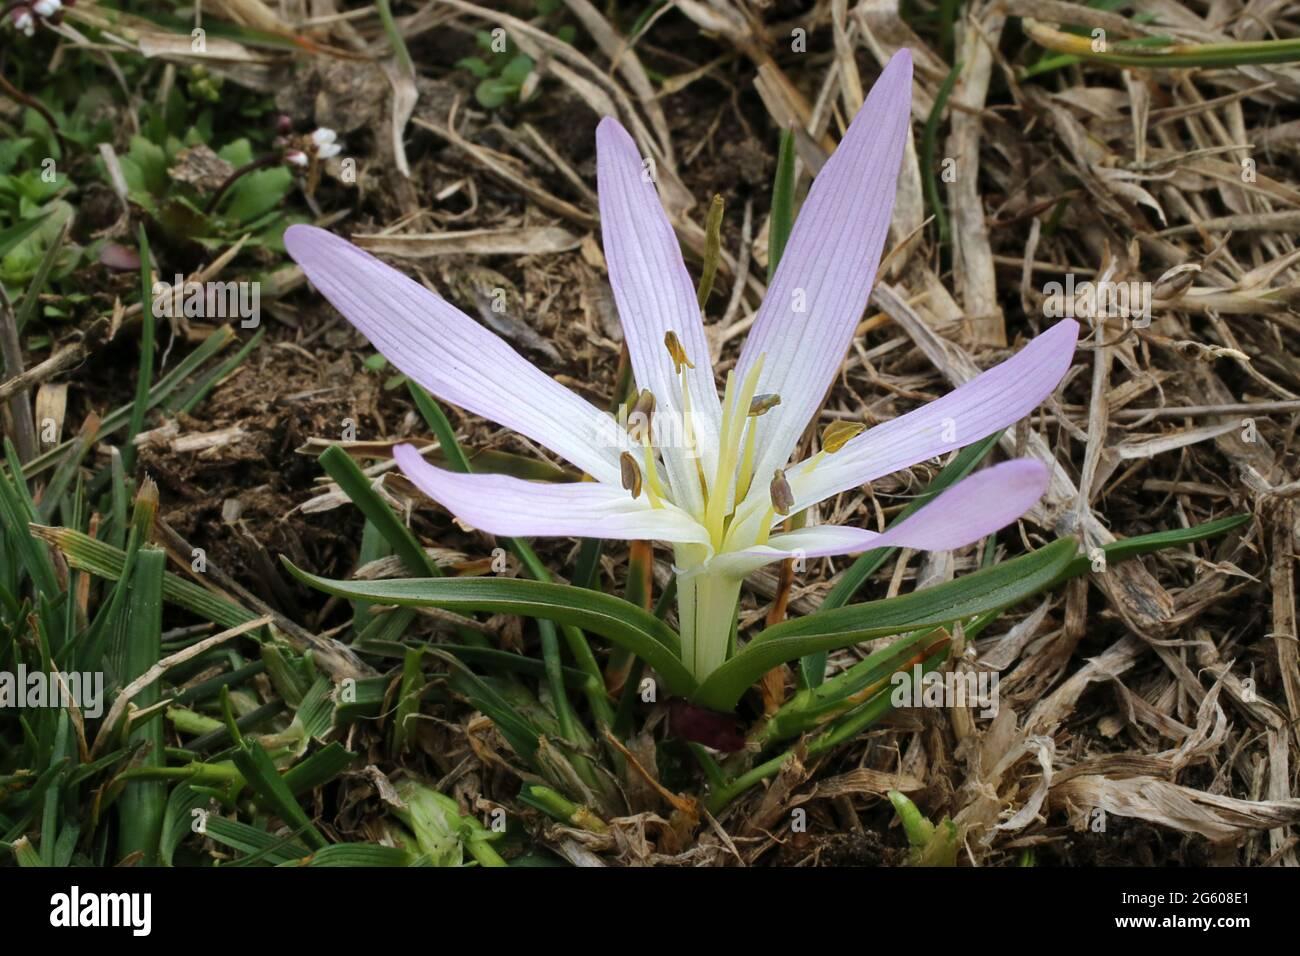 merendera-sobolifera-colchicum-soboliferum-colchicaceae-wild-plant-shot-in-summer-2G608E1.jpg